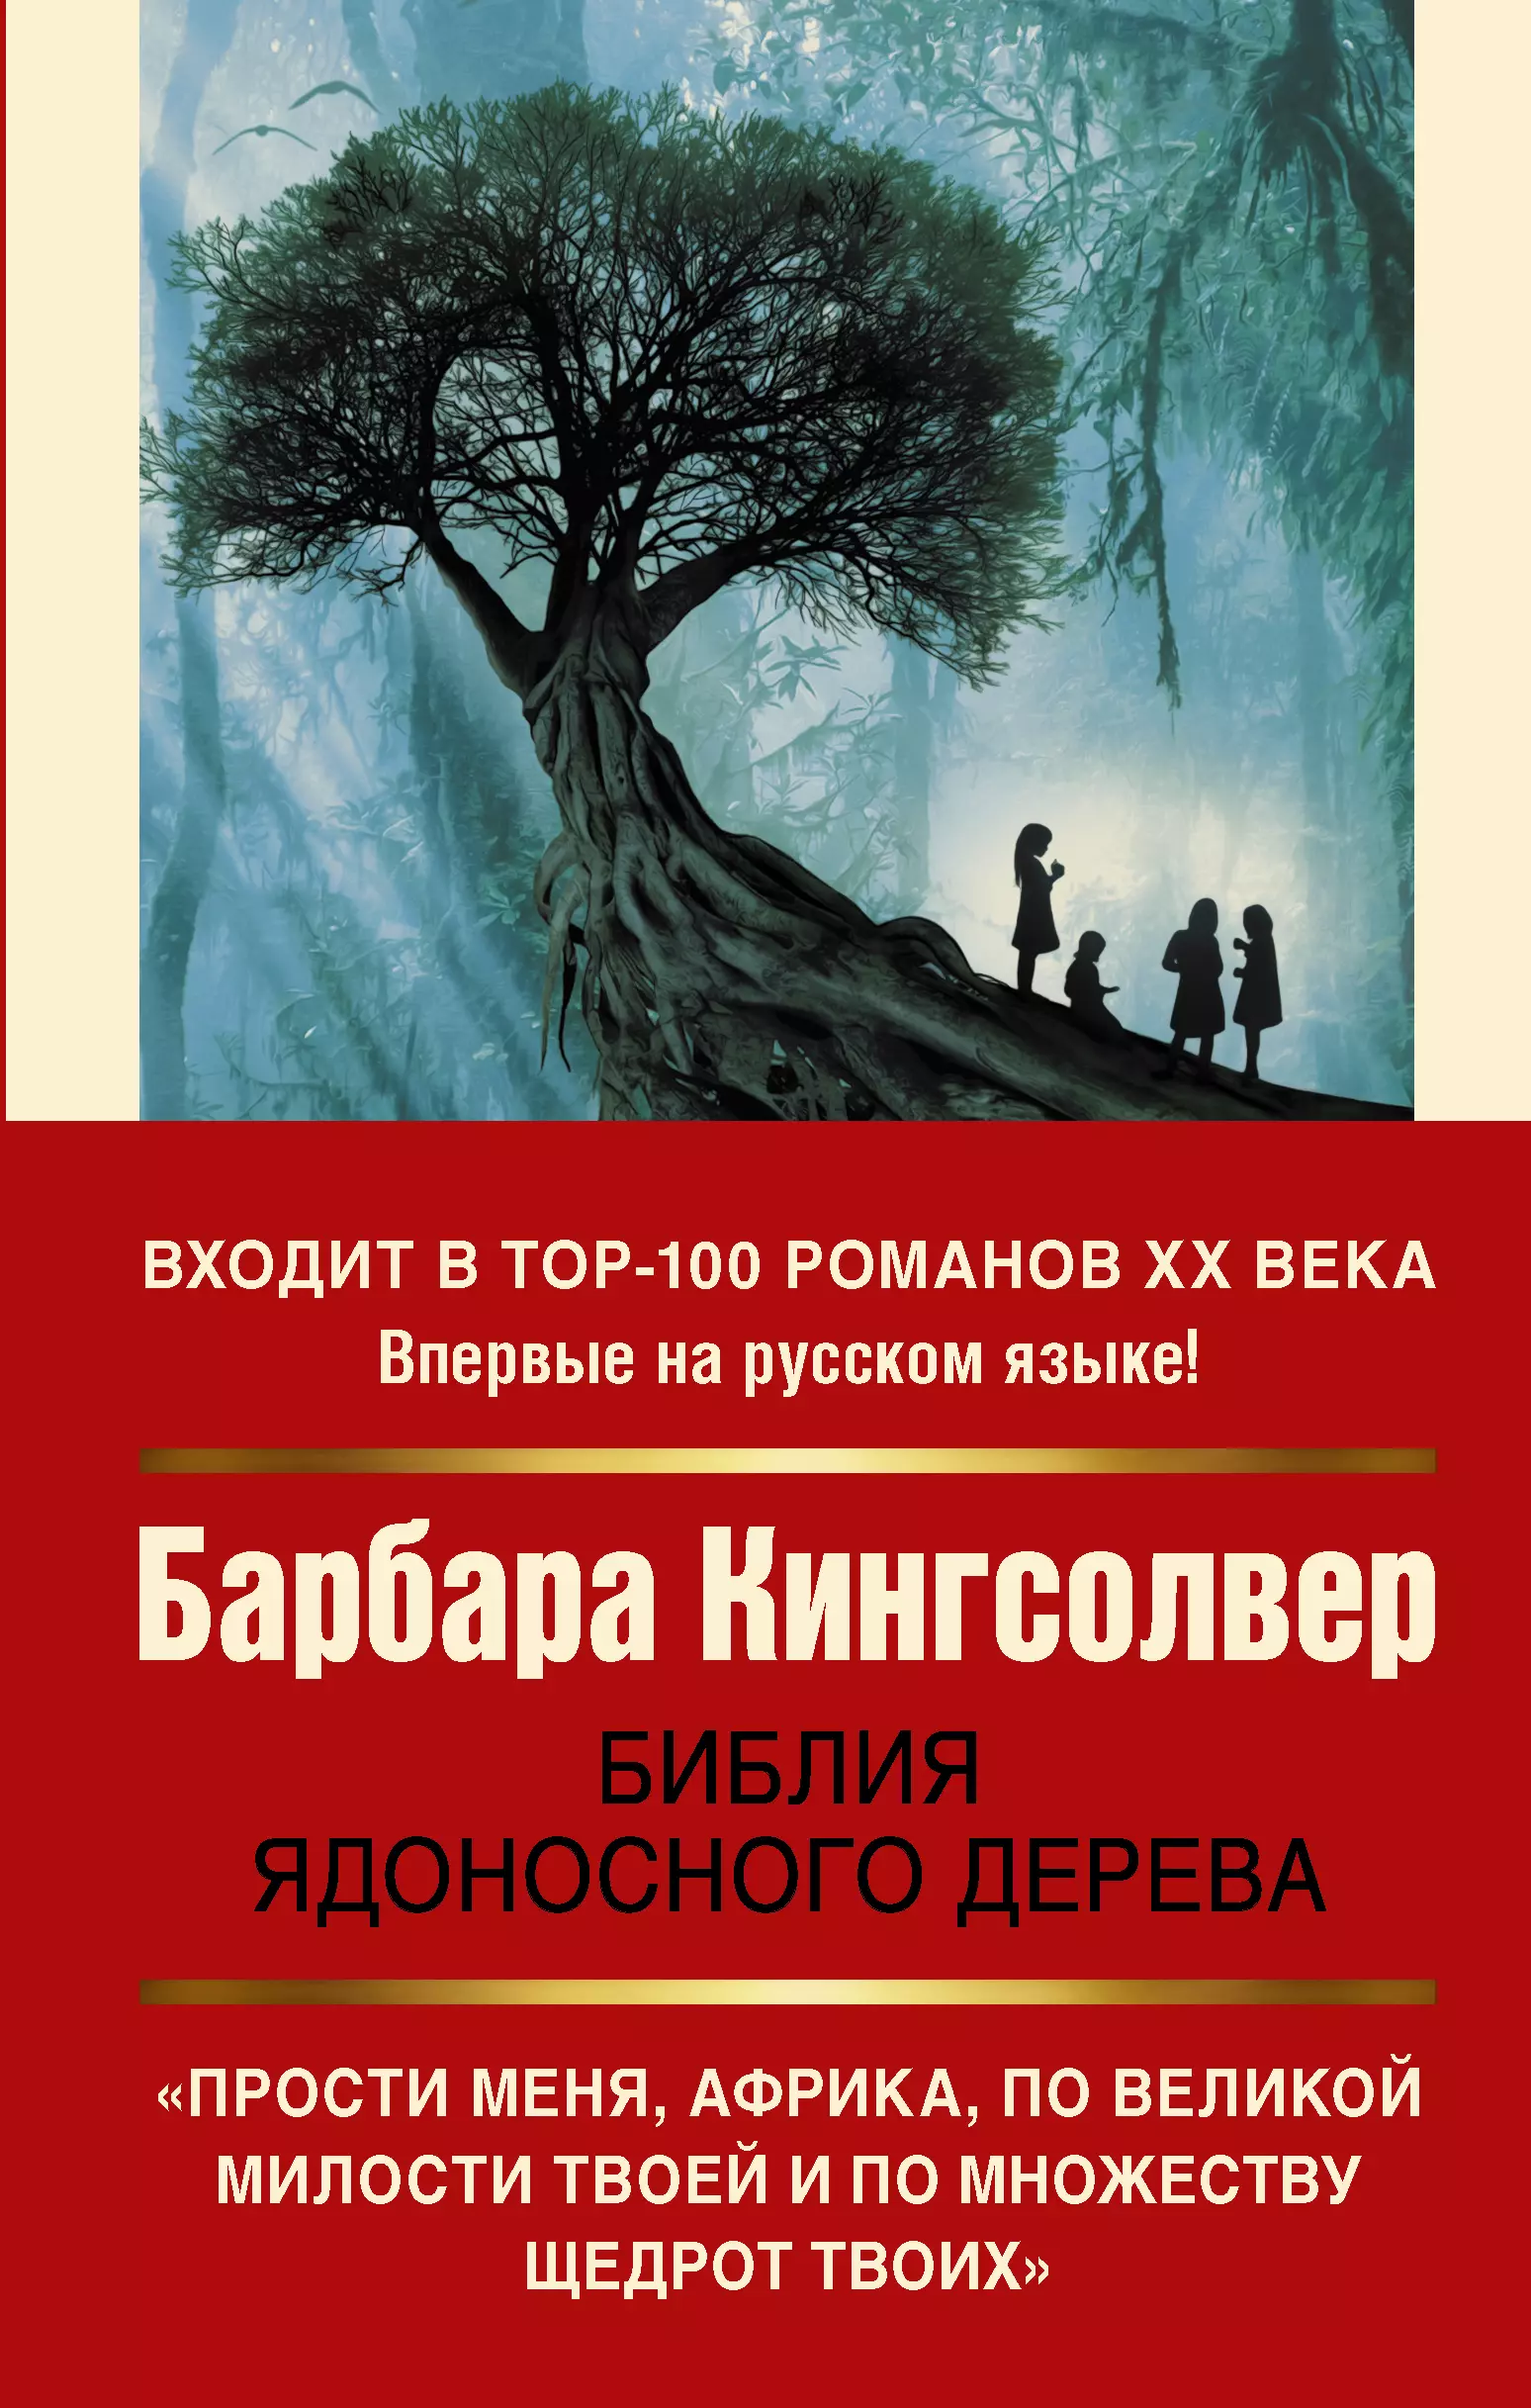 Кингсолвер Барбара - Библия ядоносного дерева